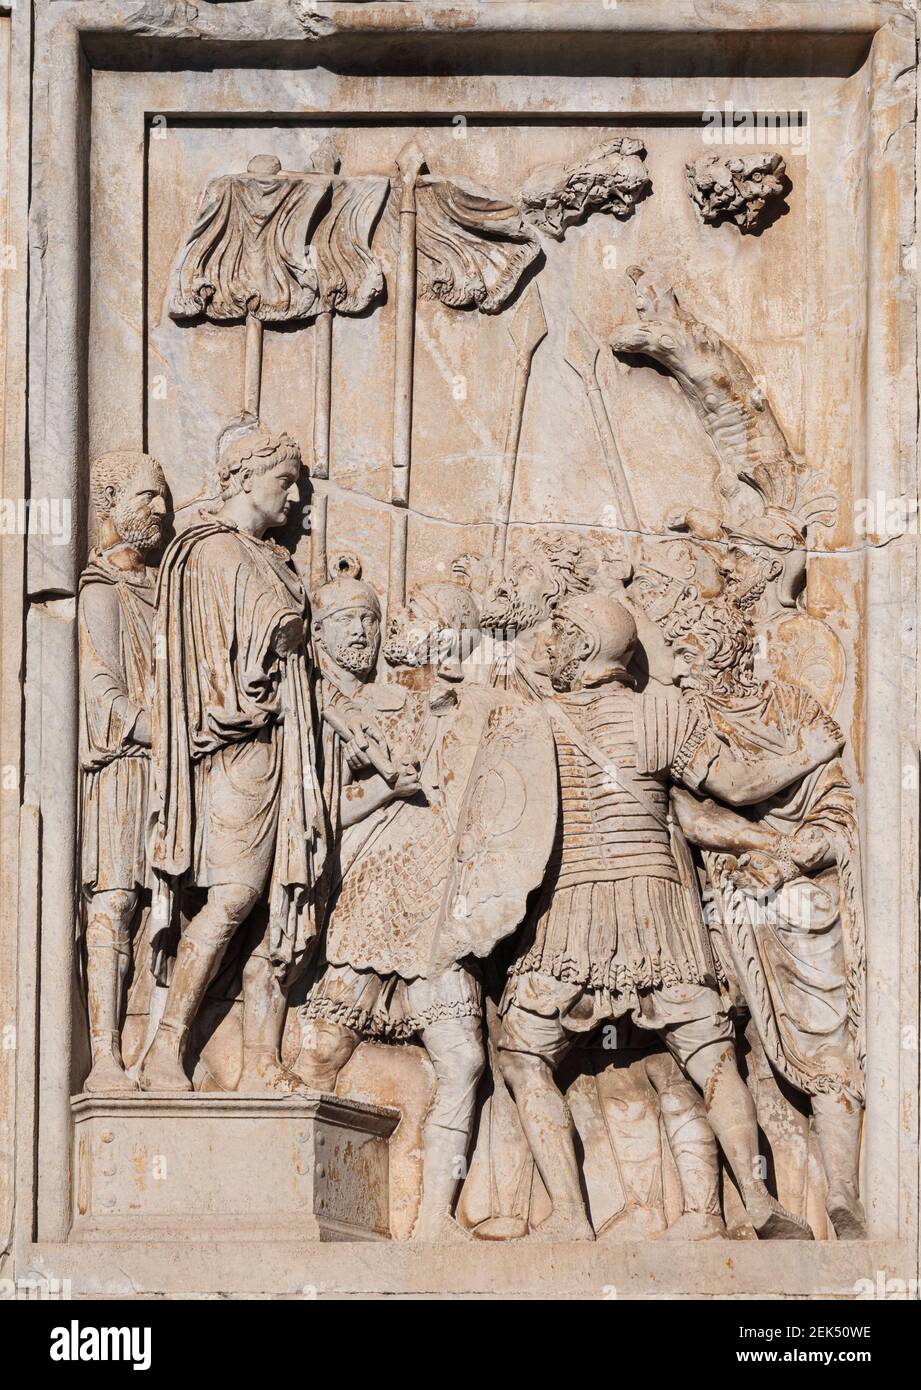 Roma. Italia. Arco di Costantino (Arco di Costantino), particolare di rilievo scultoreo raffigurante l'imperatore romano Marco Aurelio (testa sostituita da quella di Foto Stock